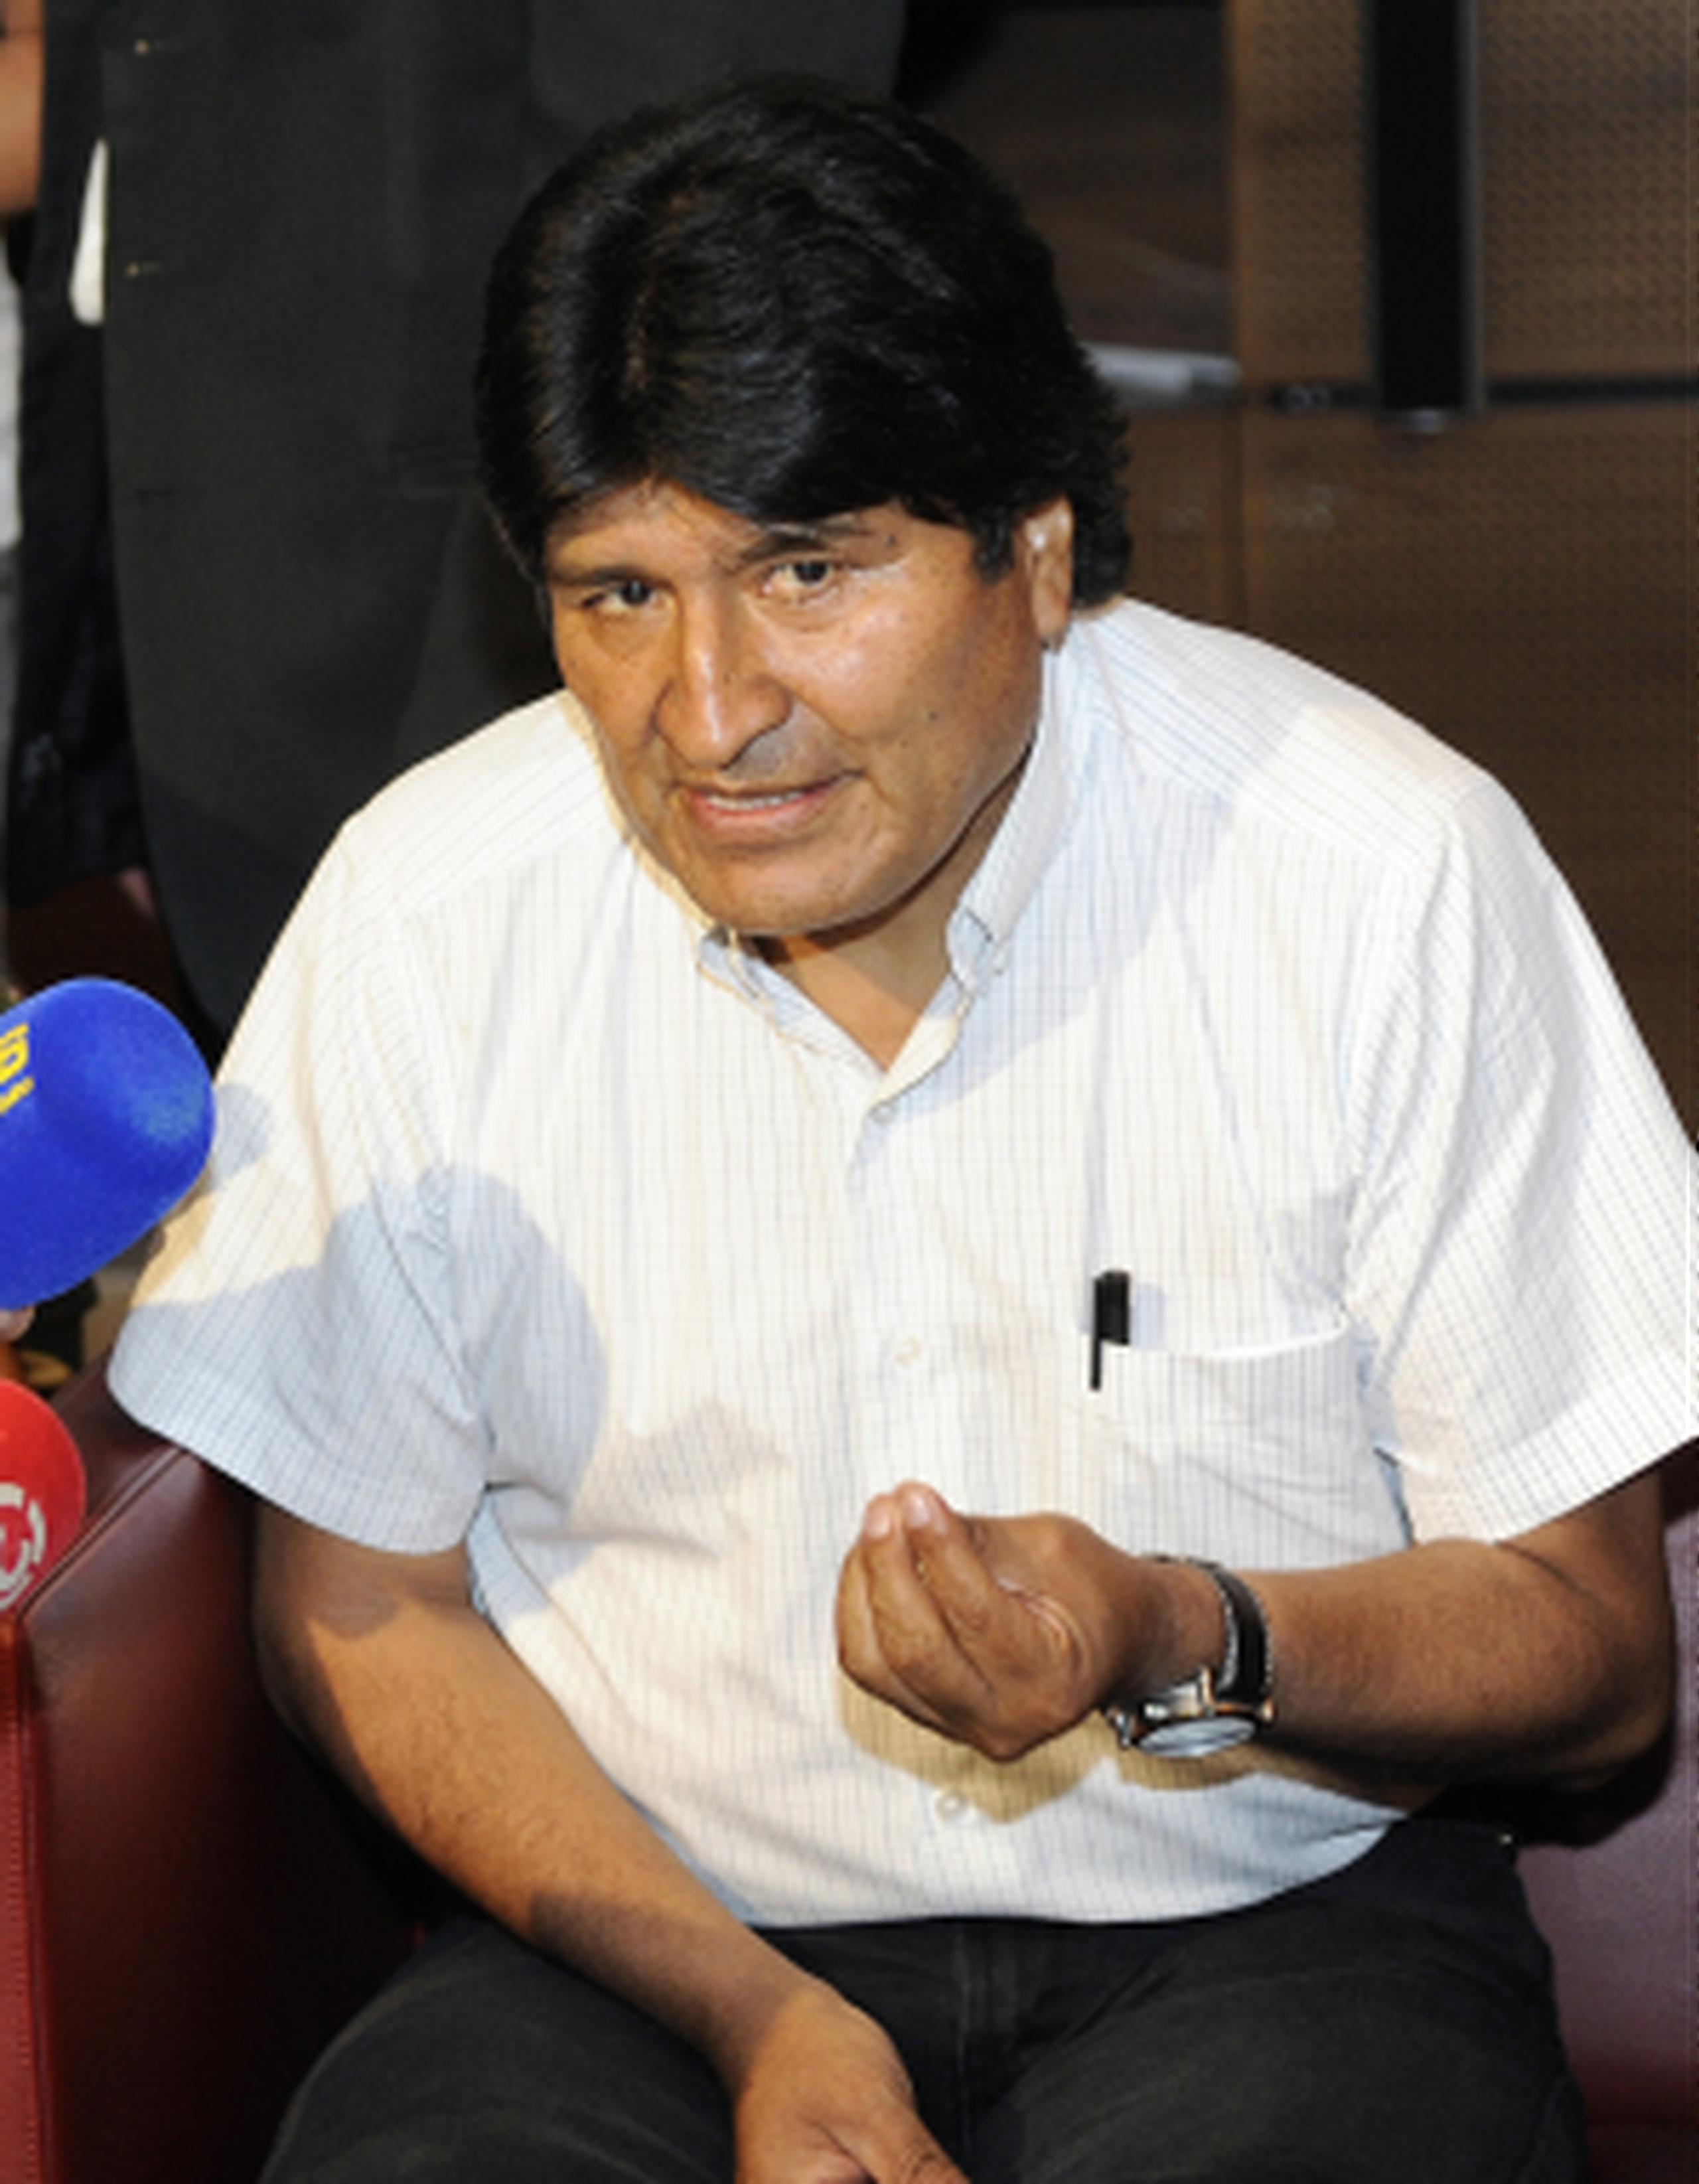 El mandatario boliviano regresaba de Moscú tras participar en una reunión de países productores de gas. (AP/Hans Punz)